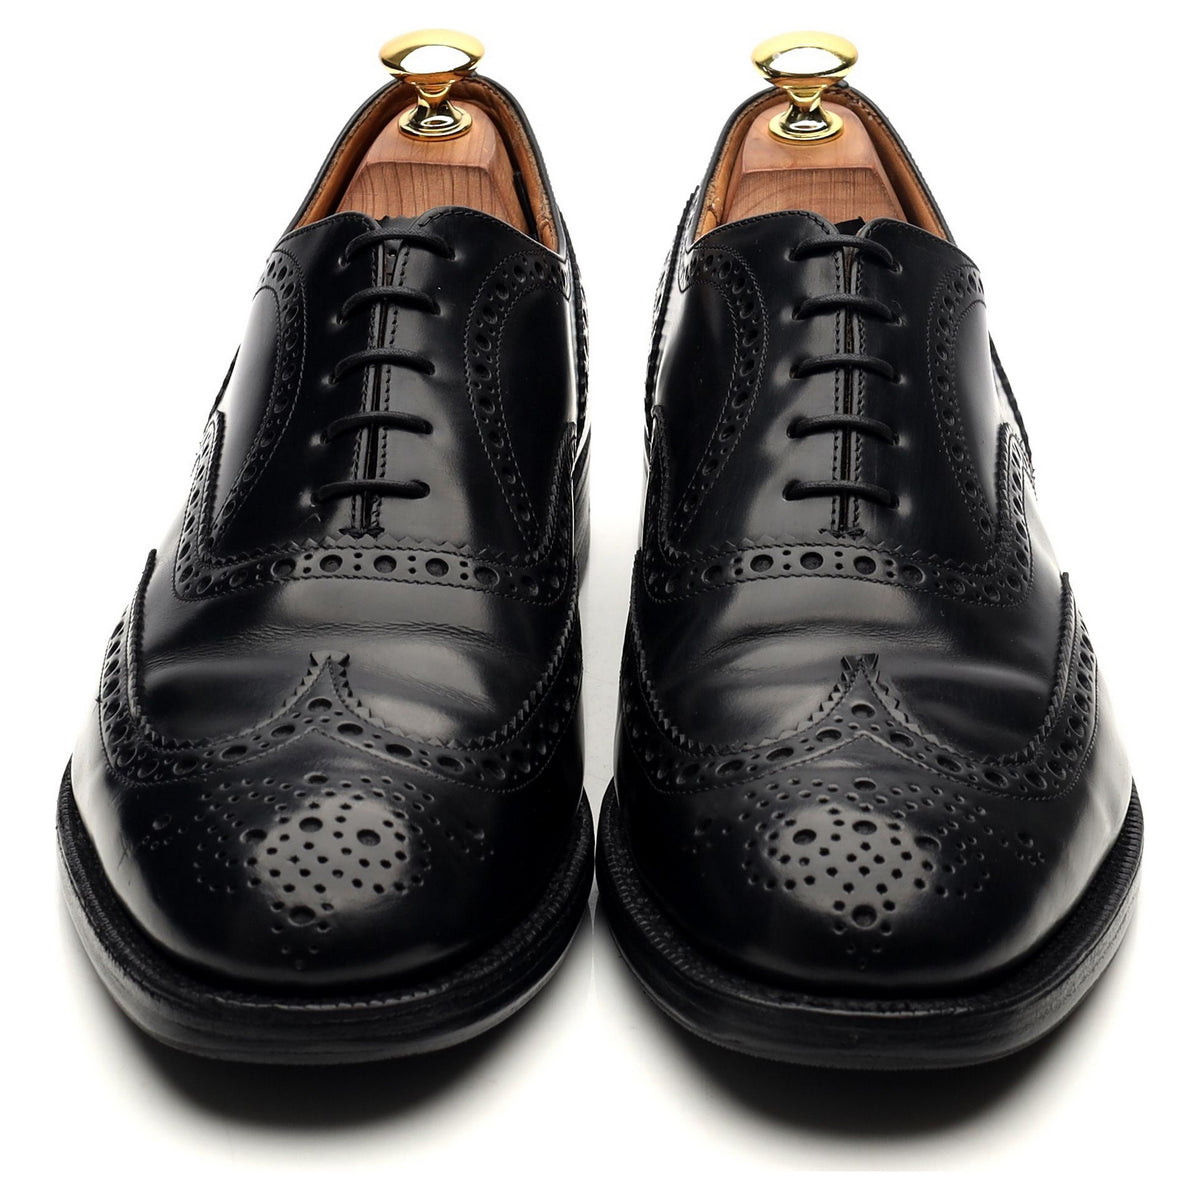 &#39;Burwood&#39; Black Leather Oxford UK 8.5 G